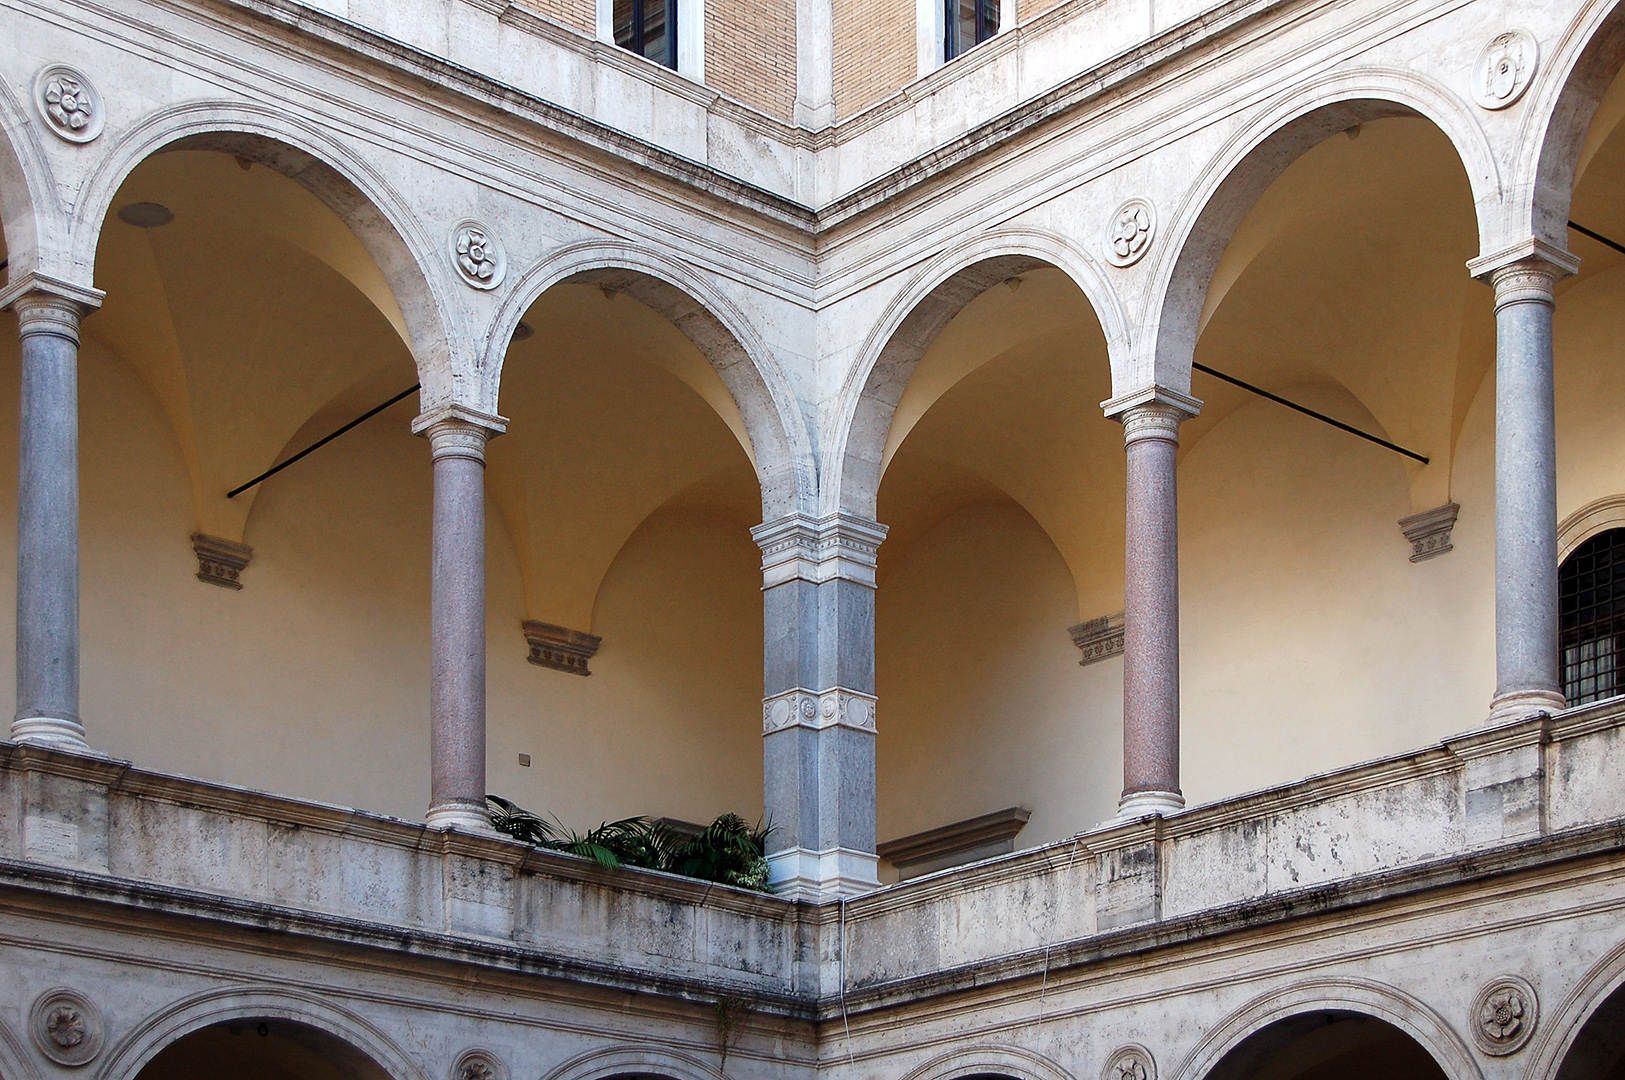 Palazzo della Cancelleria, Rome, Itali.; Palazzo della Cancelleria, Rome, Italy.